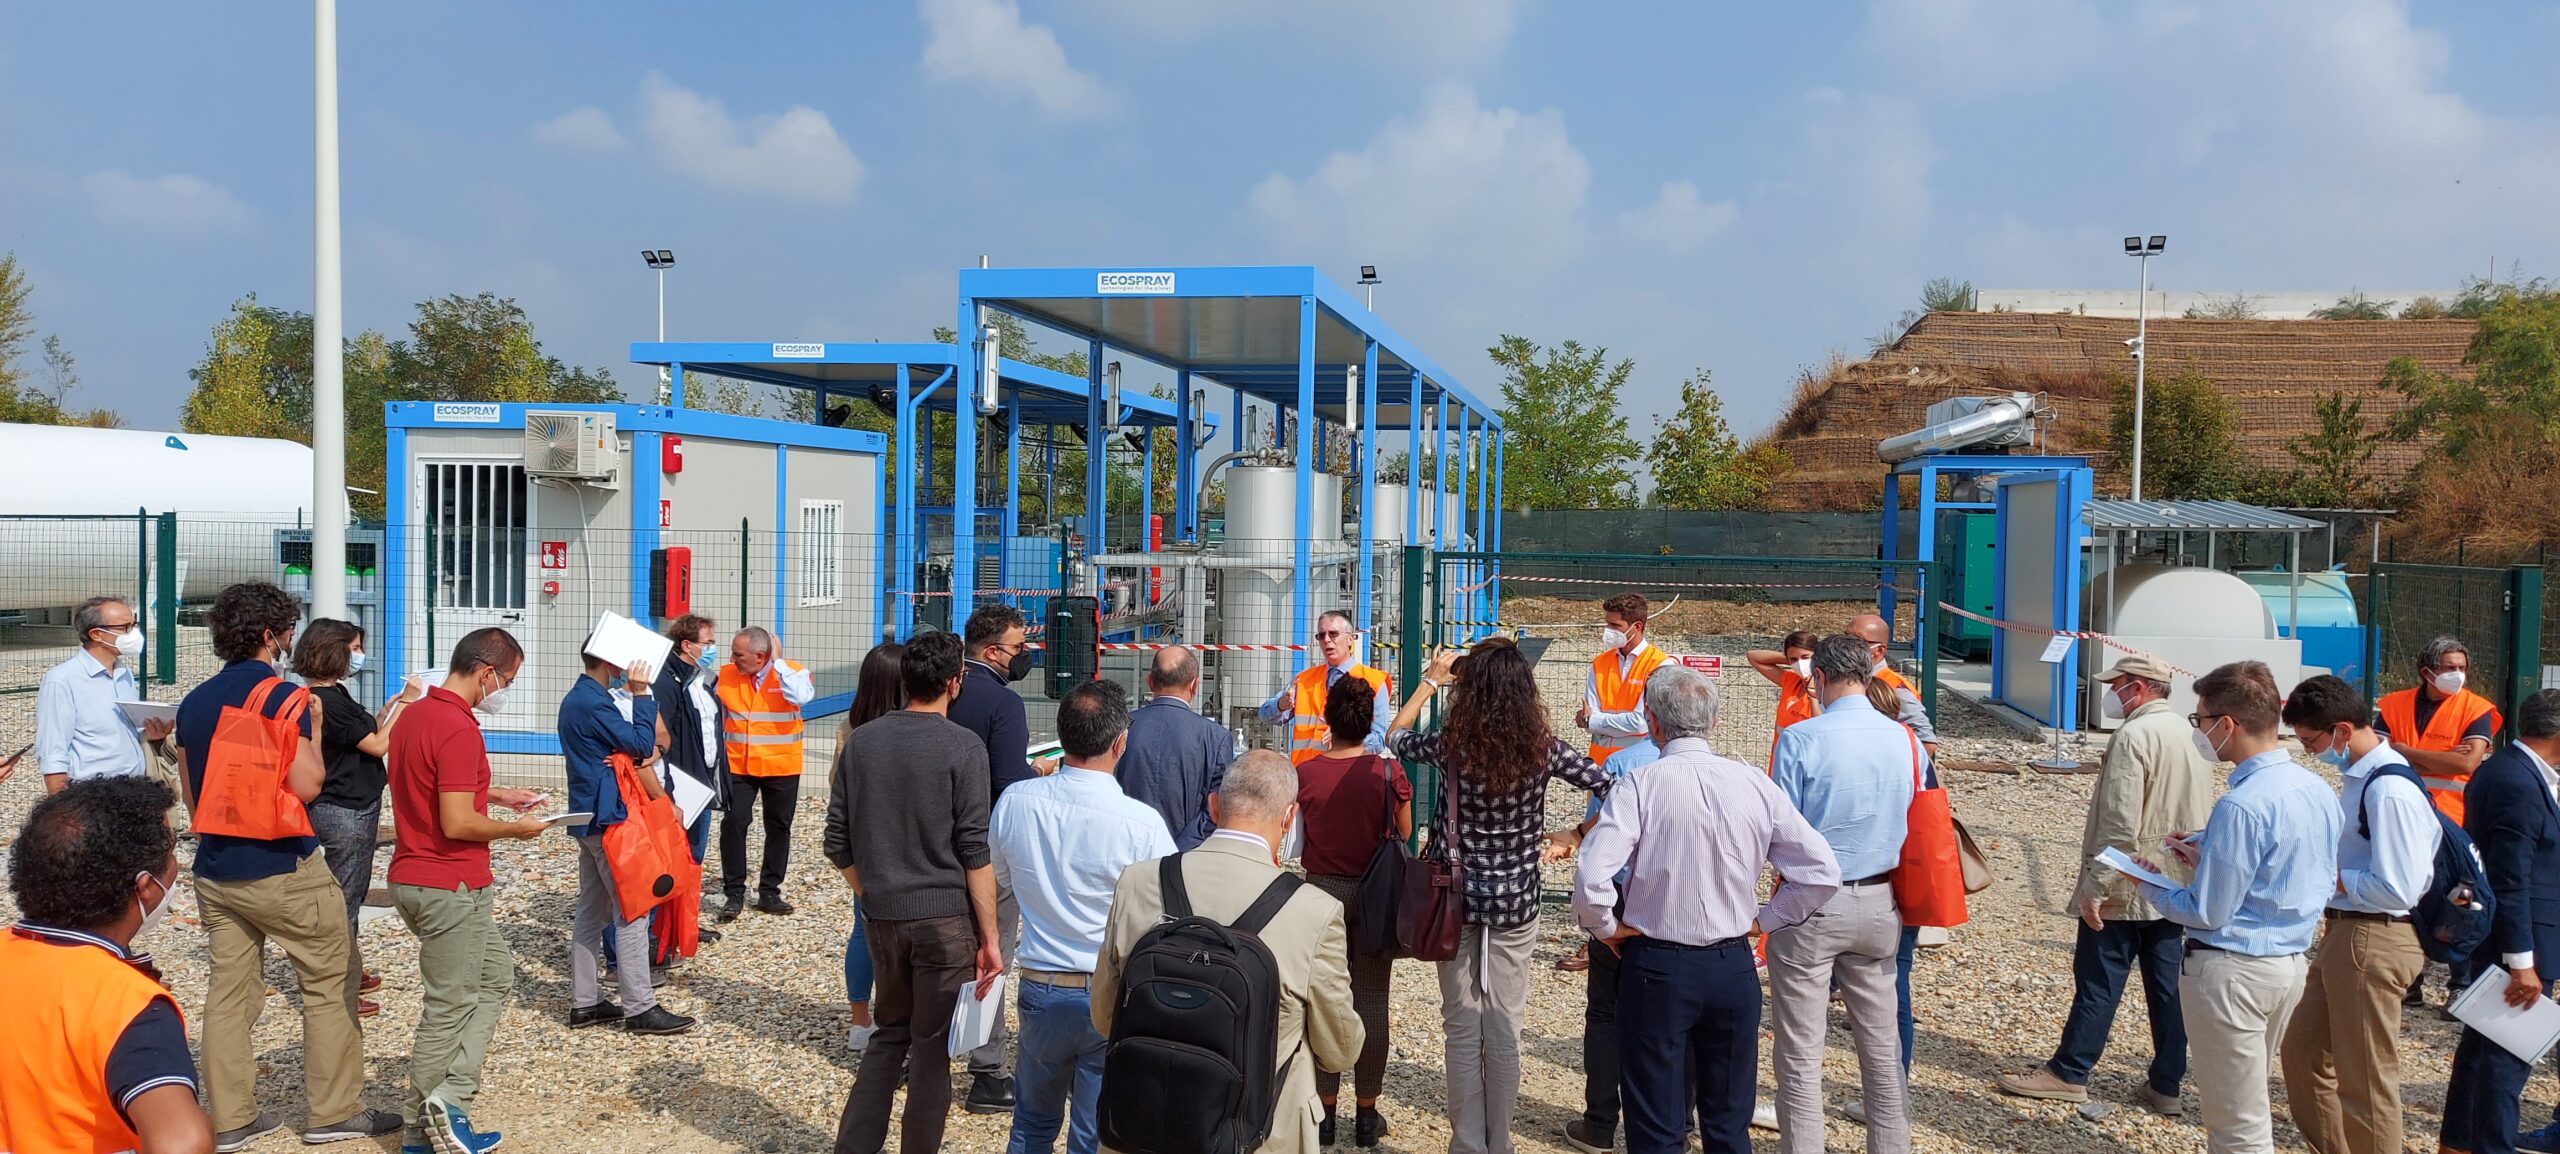 Impianto di piccola taglia (ECOSPRAY) per la liquefazione di biometano, da upgrading del biogas, installato presso una discarica